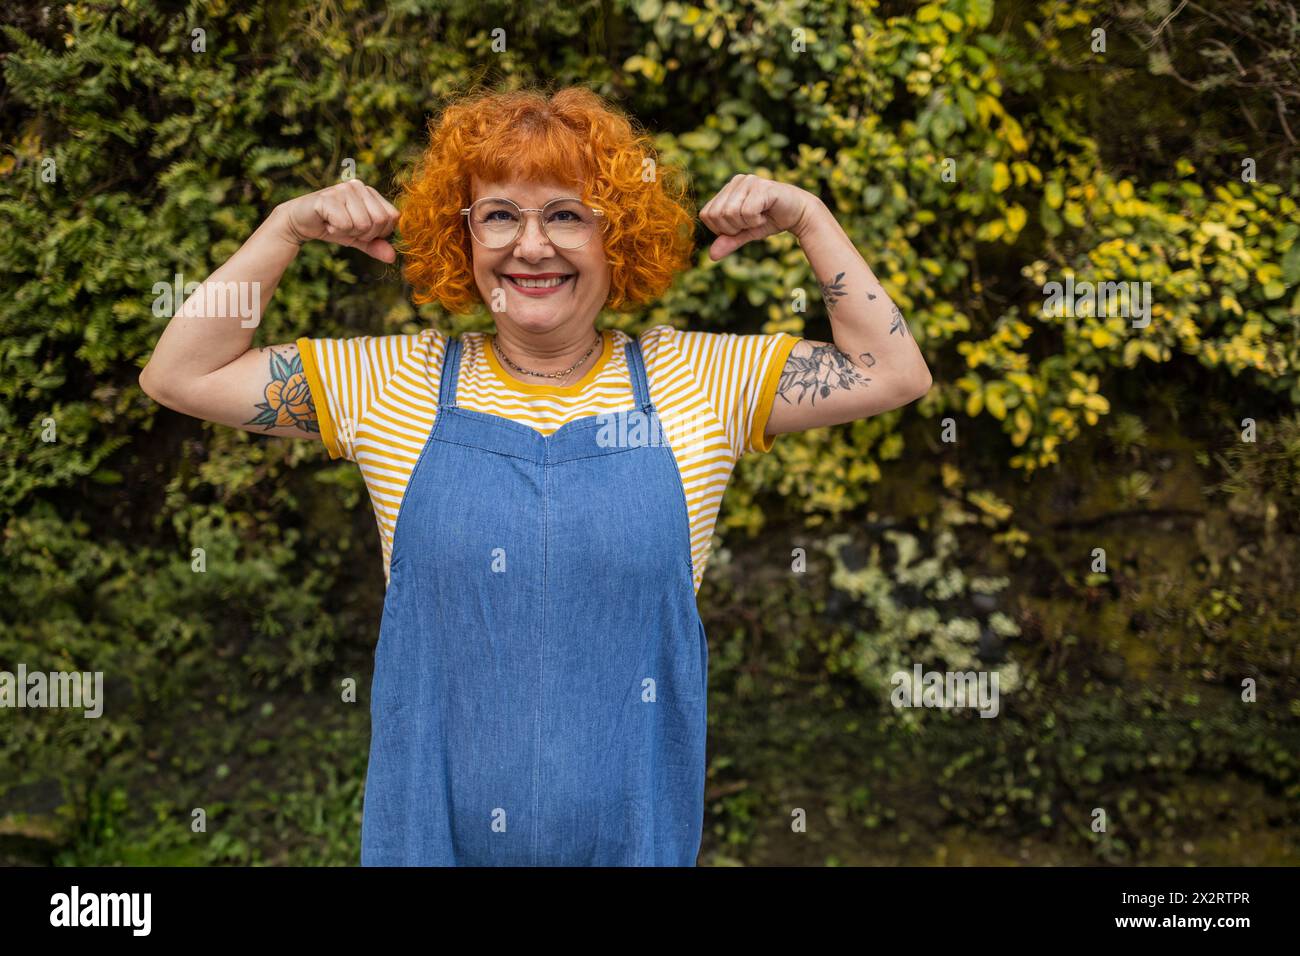 Lächelnde rothaarige ältere Frau, die Muskeln beugt Stockfoto